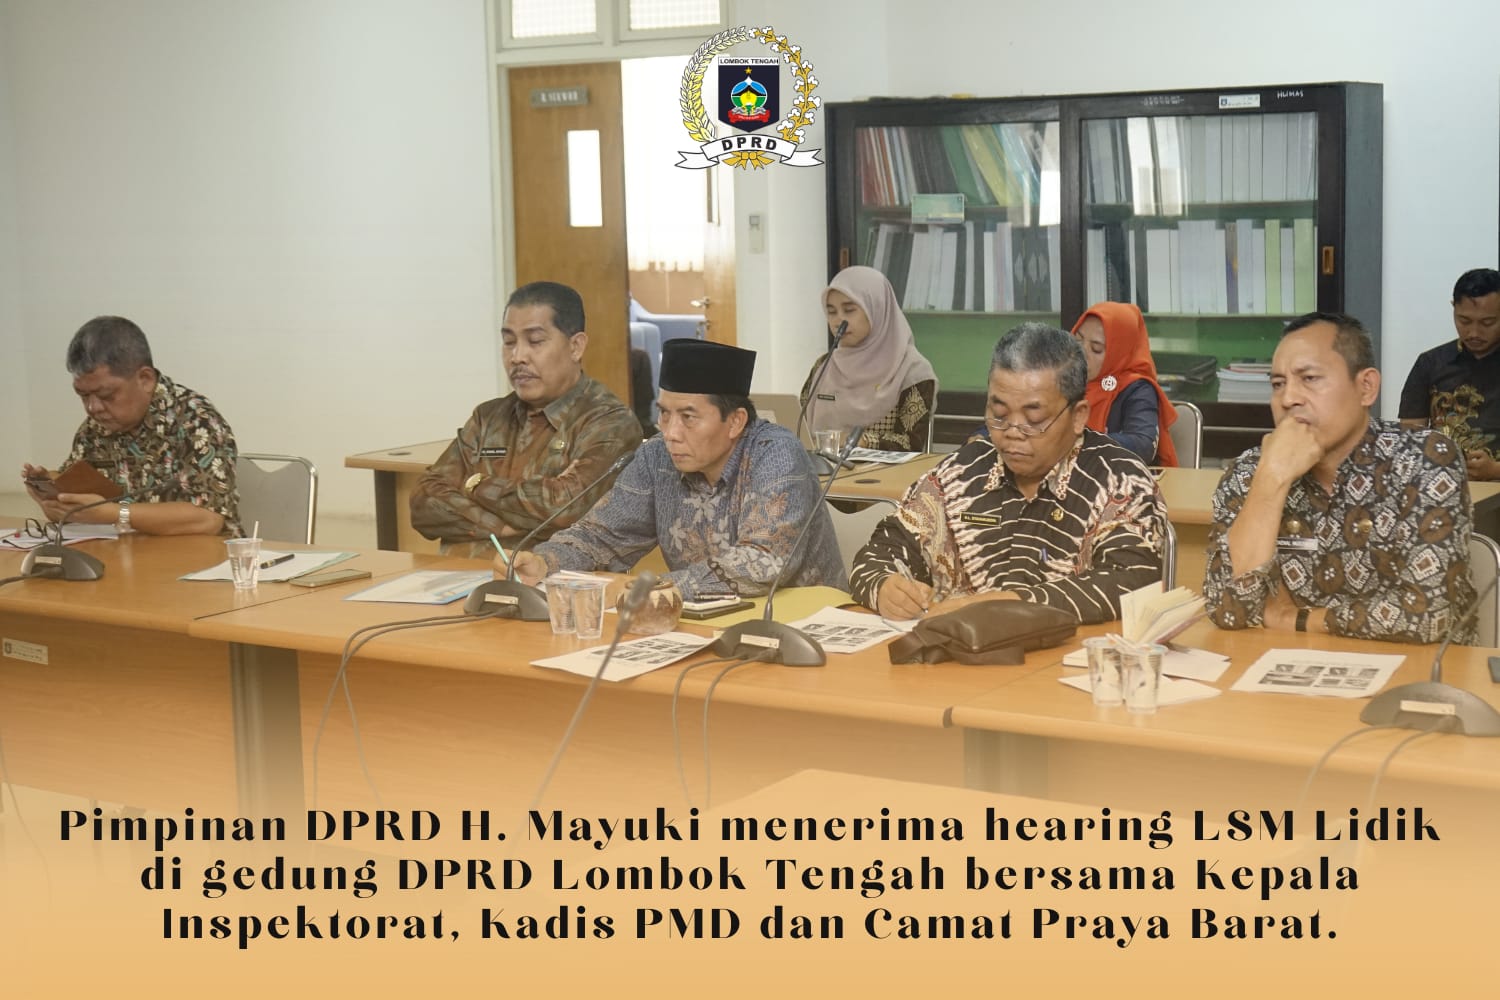 Hearing LSM Lidik di DPRD Lombok Tengah